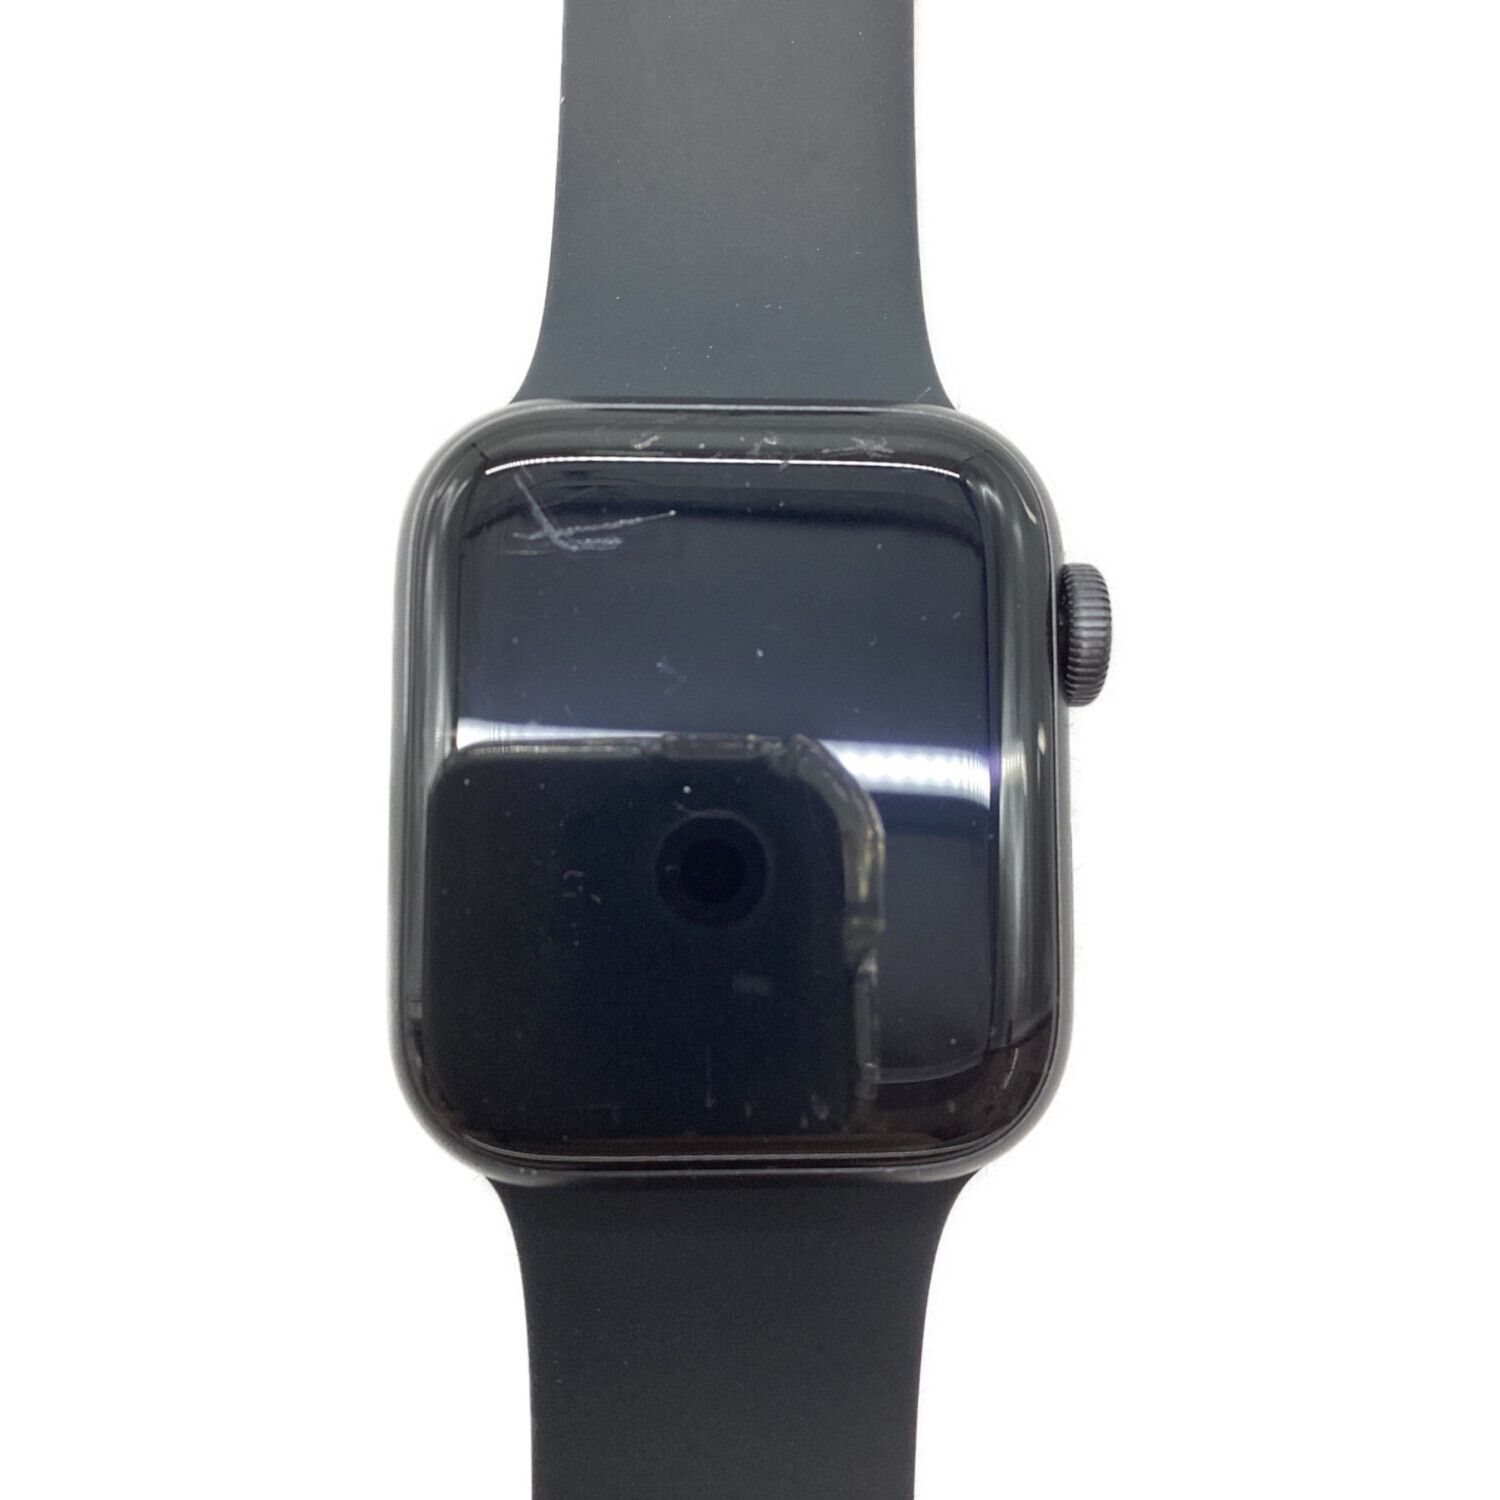 Apple (アップル) Apple Watch SE(第一世代) GPSモデル 40mm MKQ13J/A ...